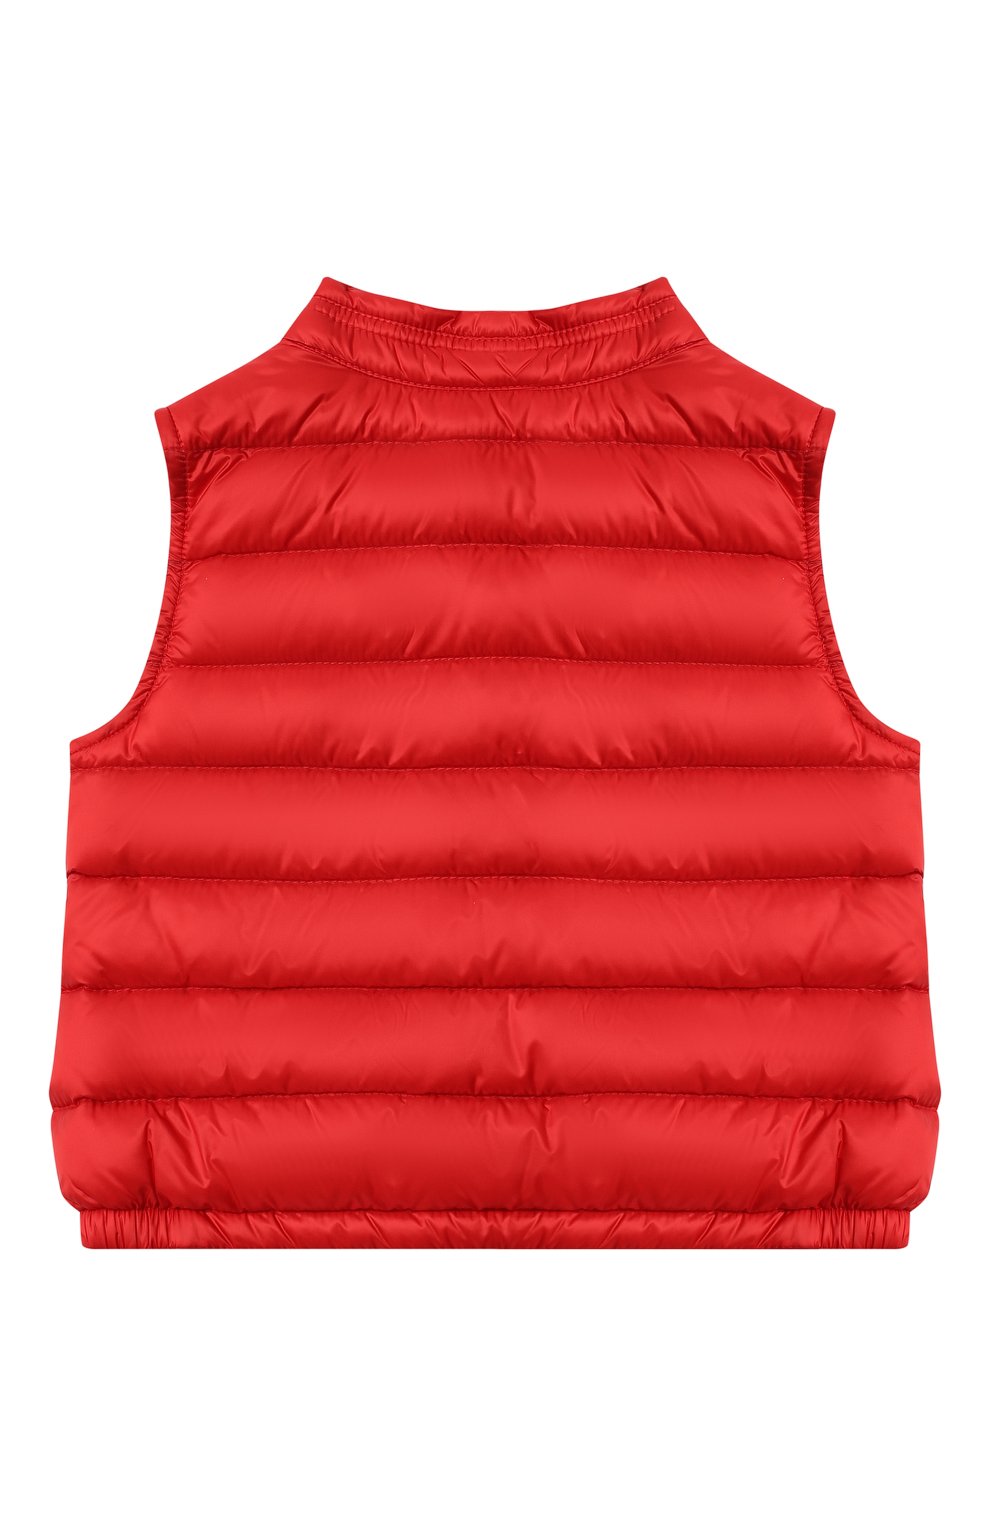 Детского пуховый жилет MONCLER красного цвета, арт. H1-951-1A000-33-C0401 | Фото 2 (Кросс-КТ НВ: Верхняя одежда-одежда, Утепленные жилеты)